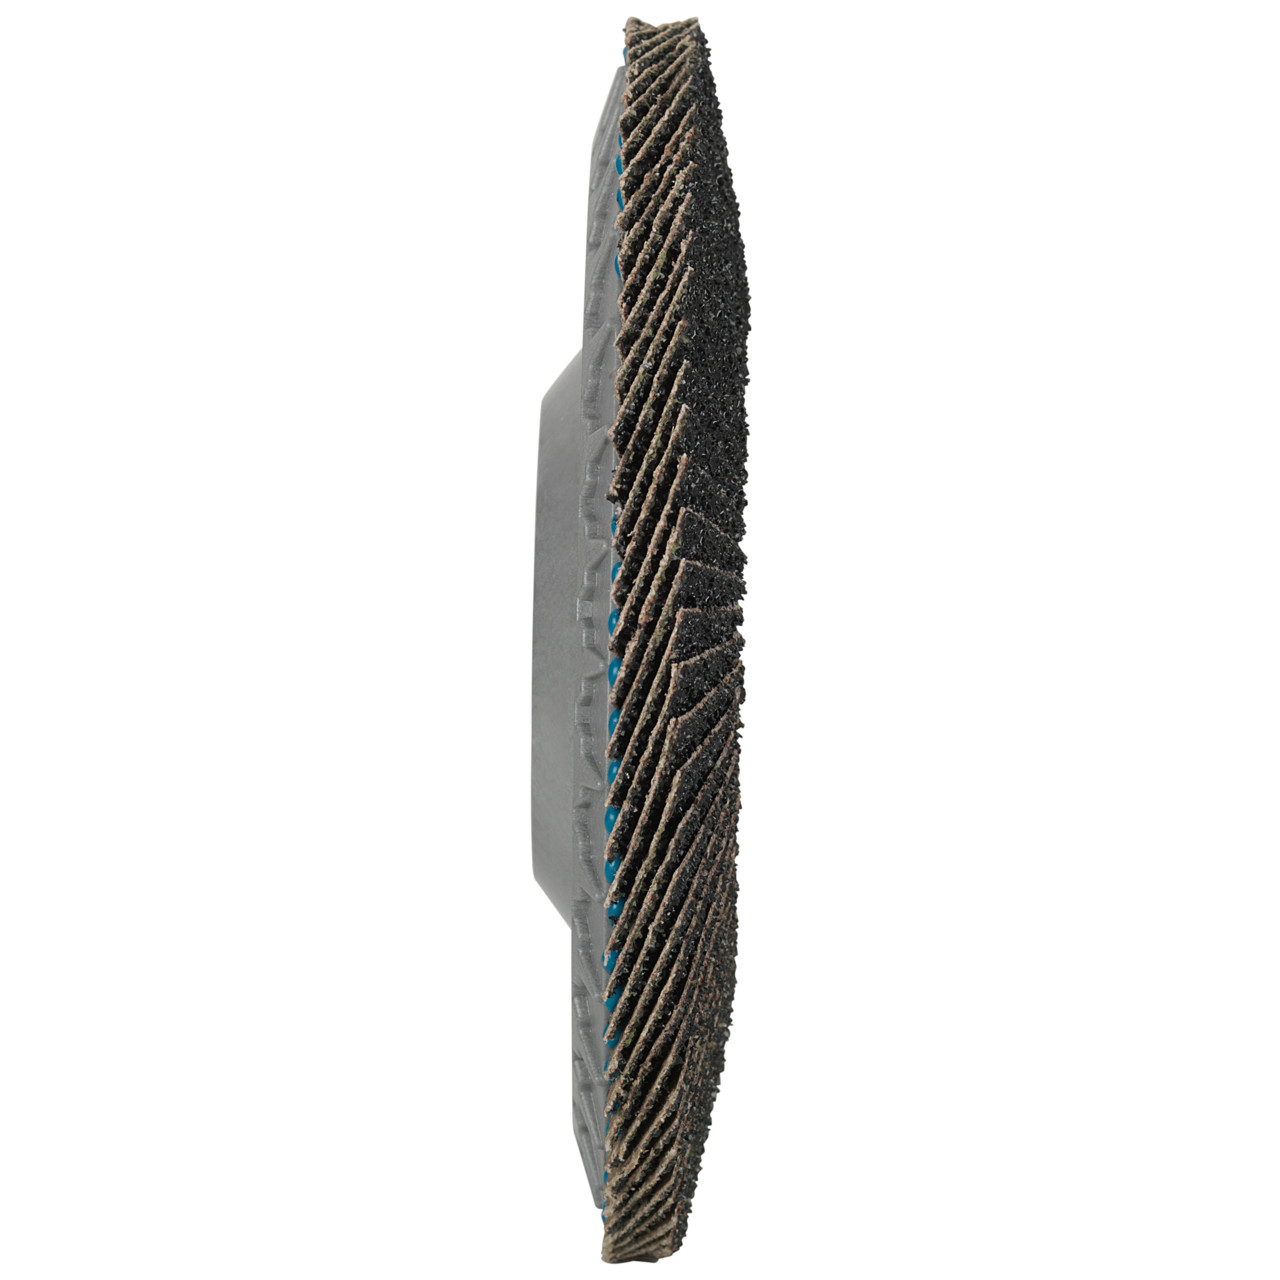 Tyrolit Arandela de seguridad dentada DxH 178x22,23 LONGLIFE C-TRIM para acero y acero inoxidable, P40, forma: 28N - versión recta (cuerpo portador de plástico), Art. 34239199